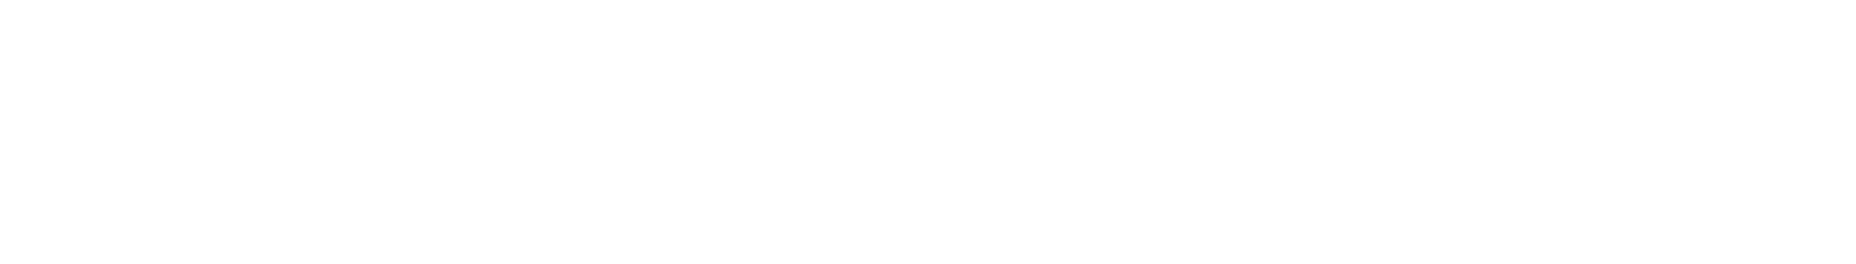 re2n-logo3